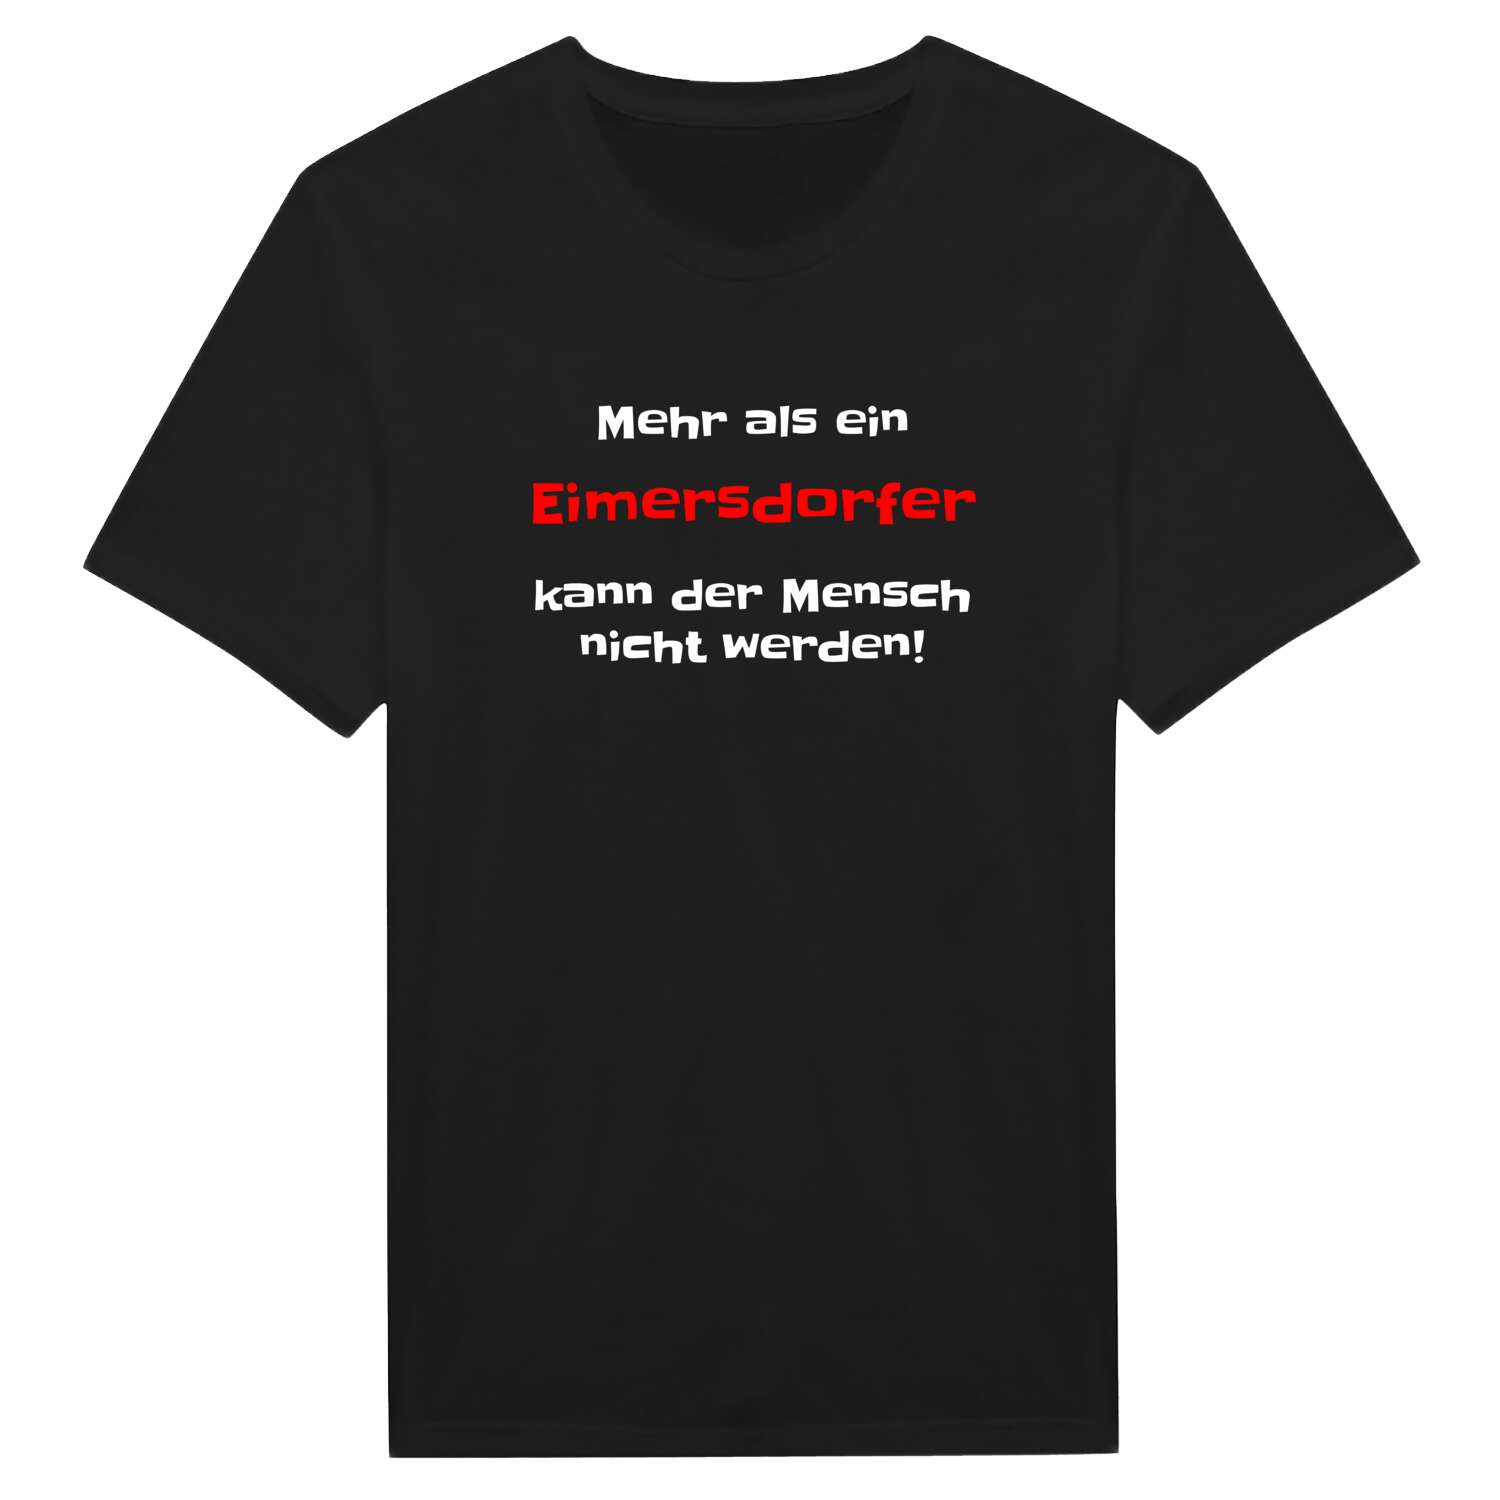 Eimersdorf T-Shirt »Mehr als ein«